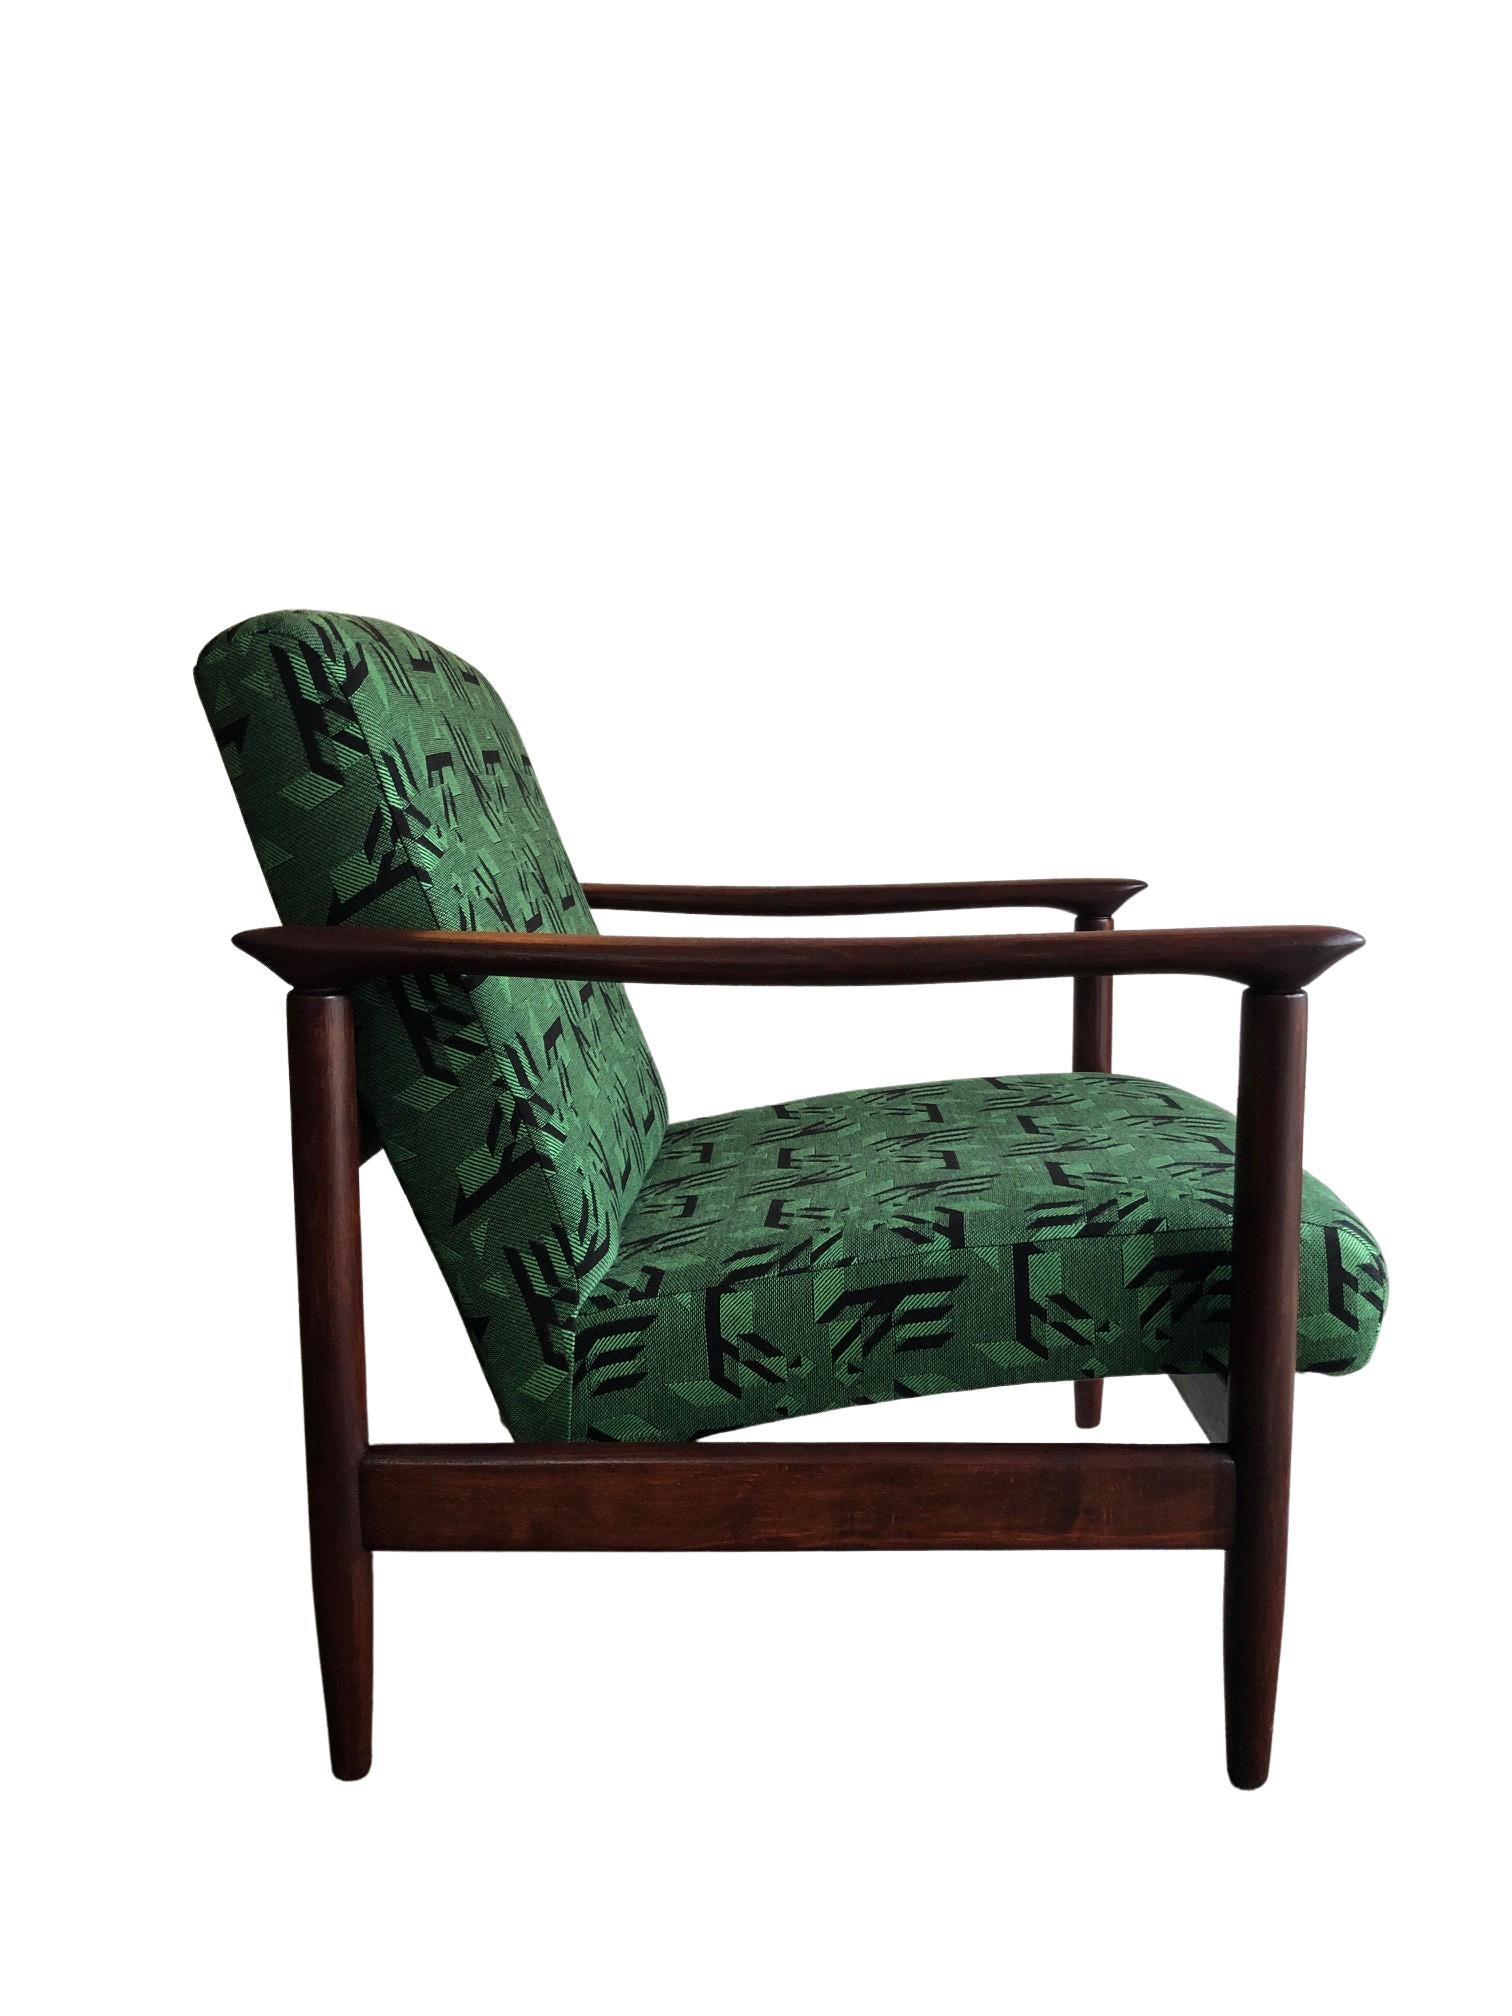 L'une des icônes du design polonais du milieu du siècle, une paire de fauteuils, conçue par Edmund Homa - architecte polonais, designer industriel et d'intérieur, professeur à l'Académie des beaux-arts de Gdansk. L'ensemble a été fabriqué par